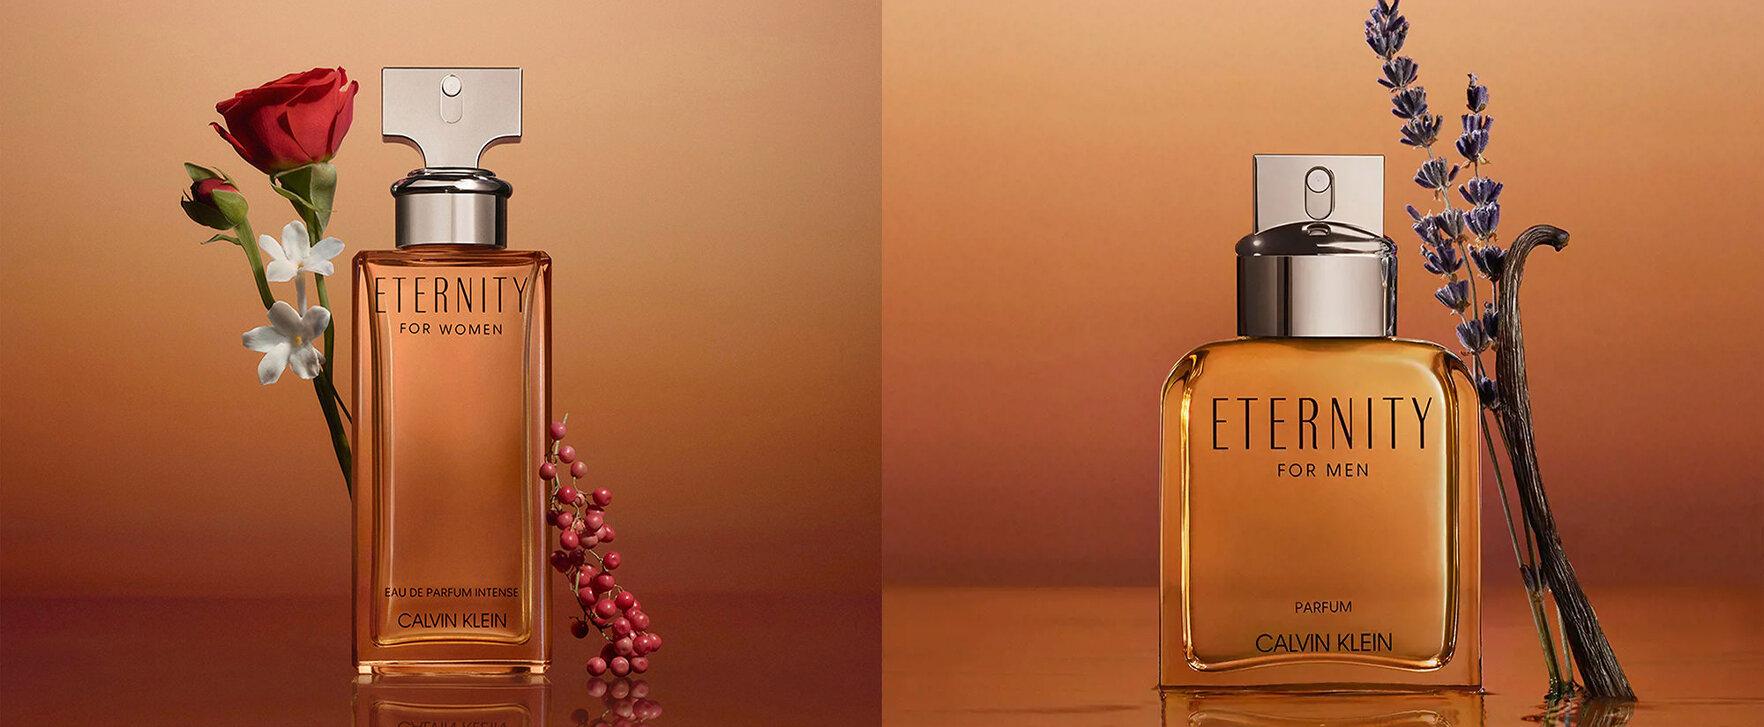 Calvin Klein erweitert bekannte Eternity-Reihe mit neuem Parfum-Duo